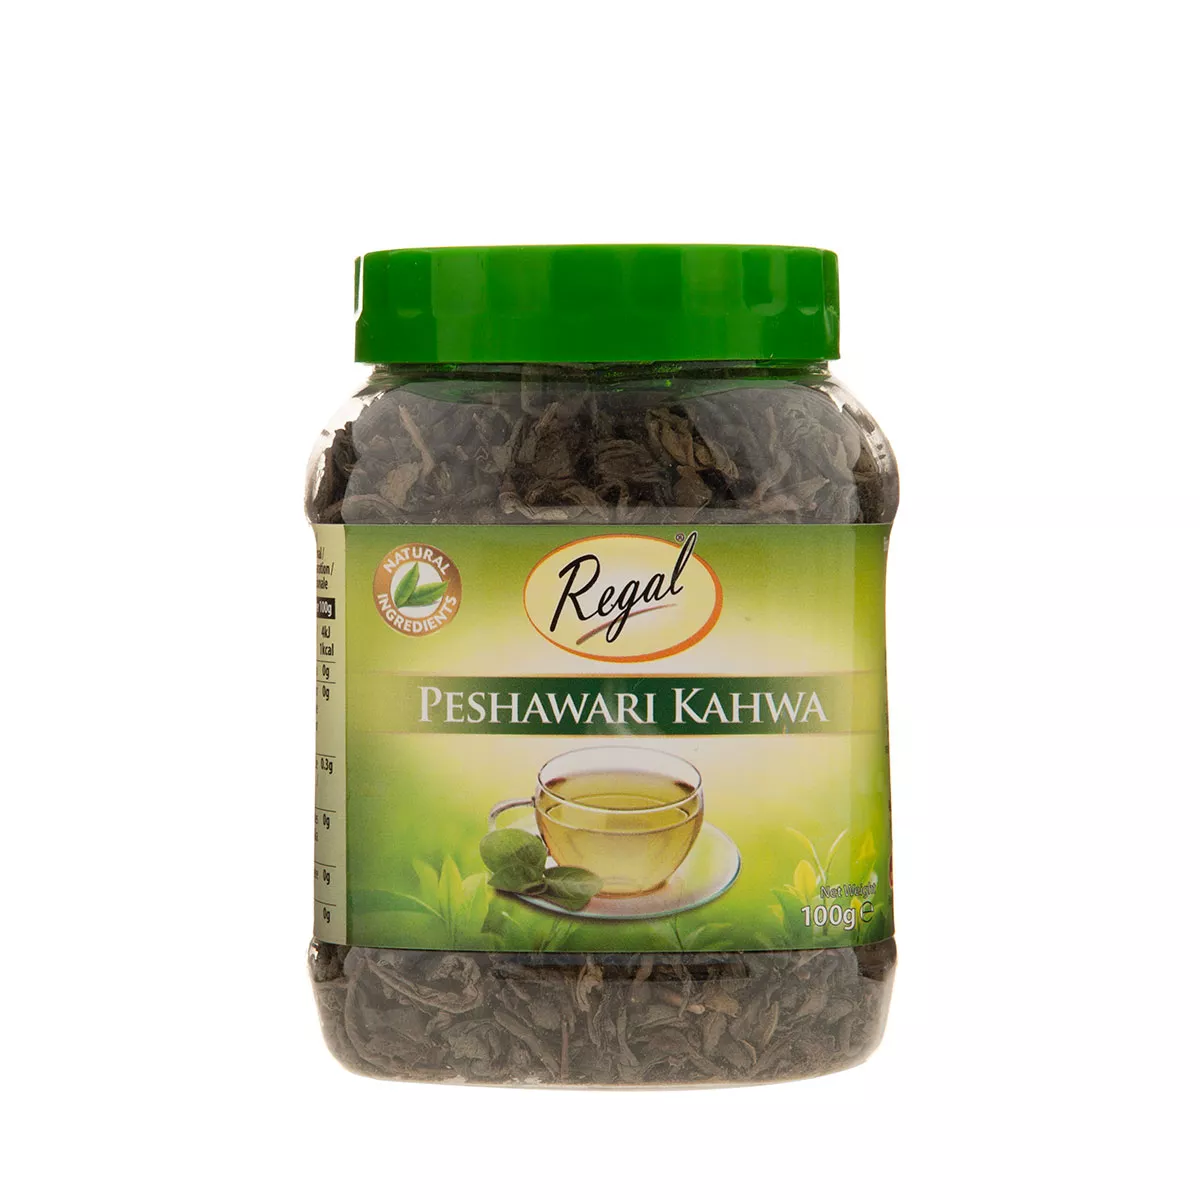 Regal Peshawari Kahwa Tea – JAR